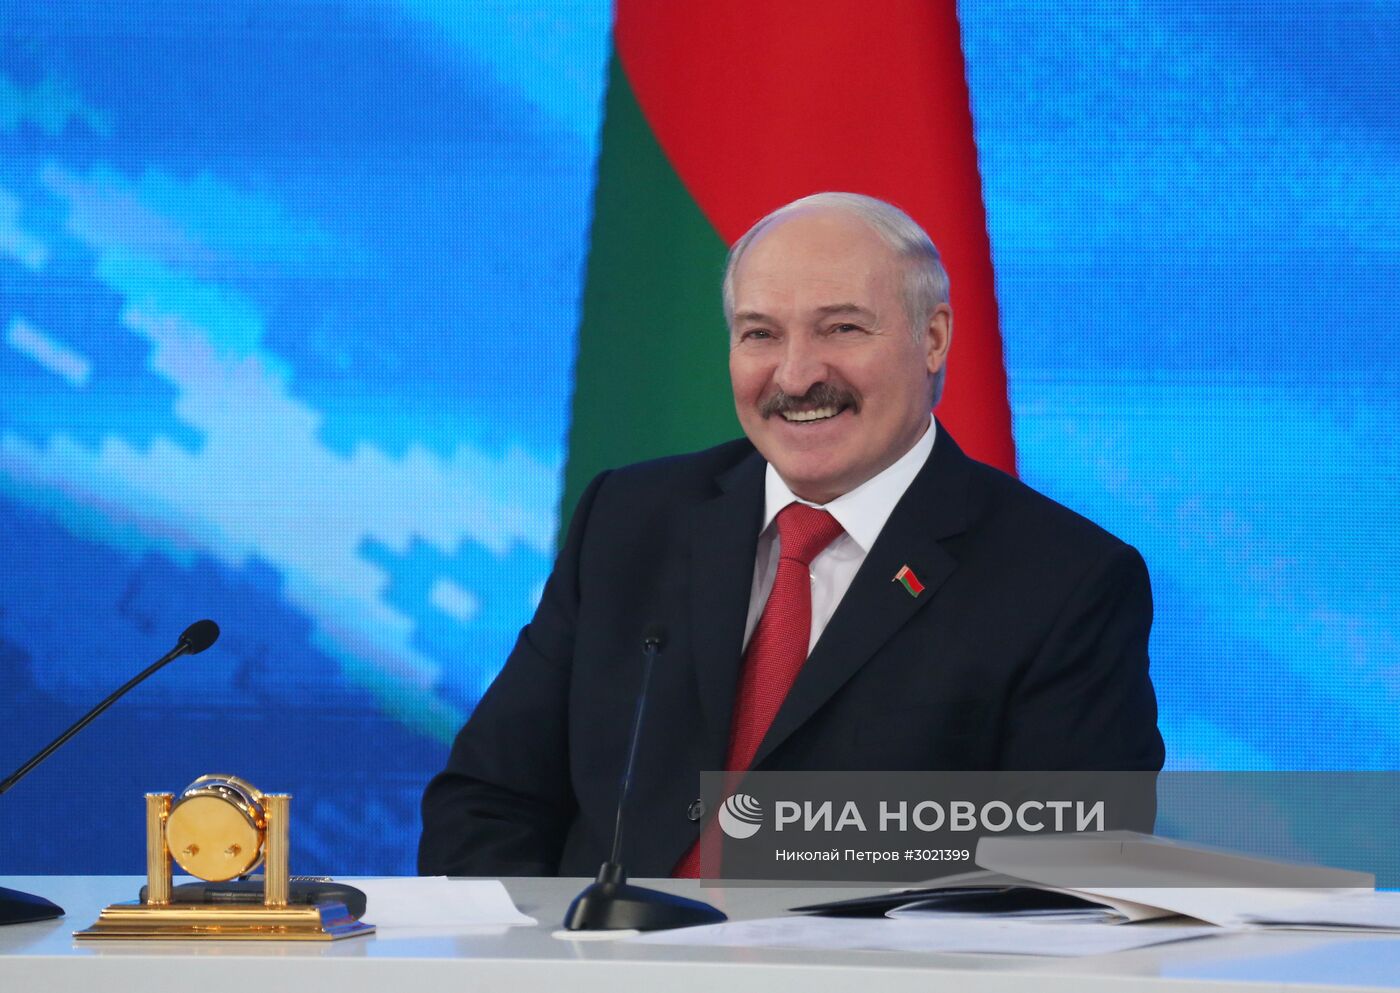 Пресс-конференция президента Белоруссии А. Лукашенко в Минске